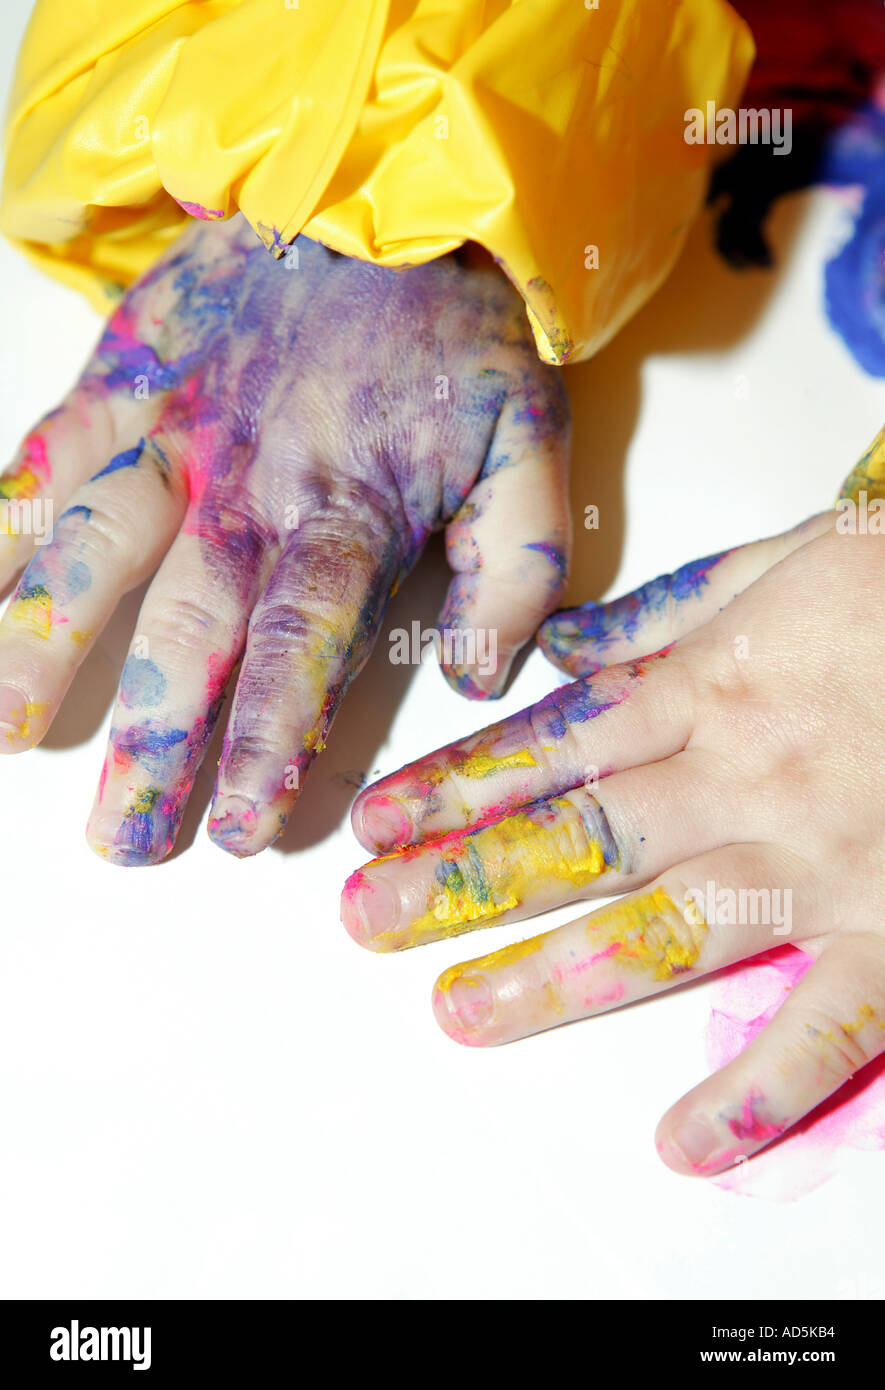 starkes Konzept zum Kinderspiel und lernen mit schmutzigen Händen Childs-davon Malerei Stockfoto